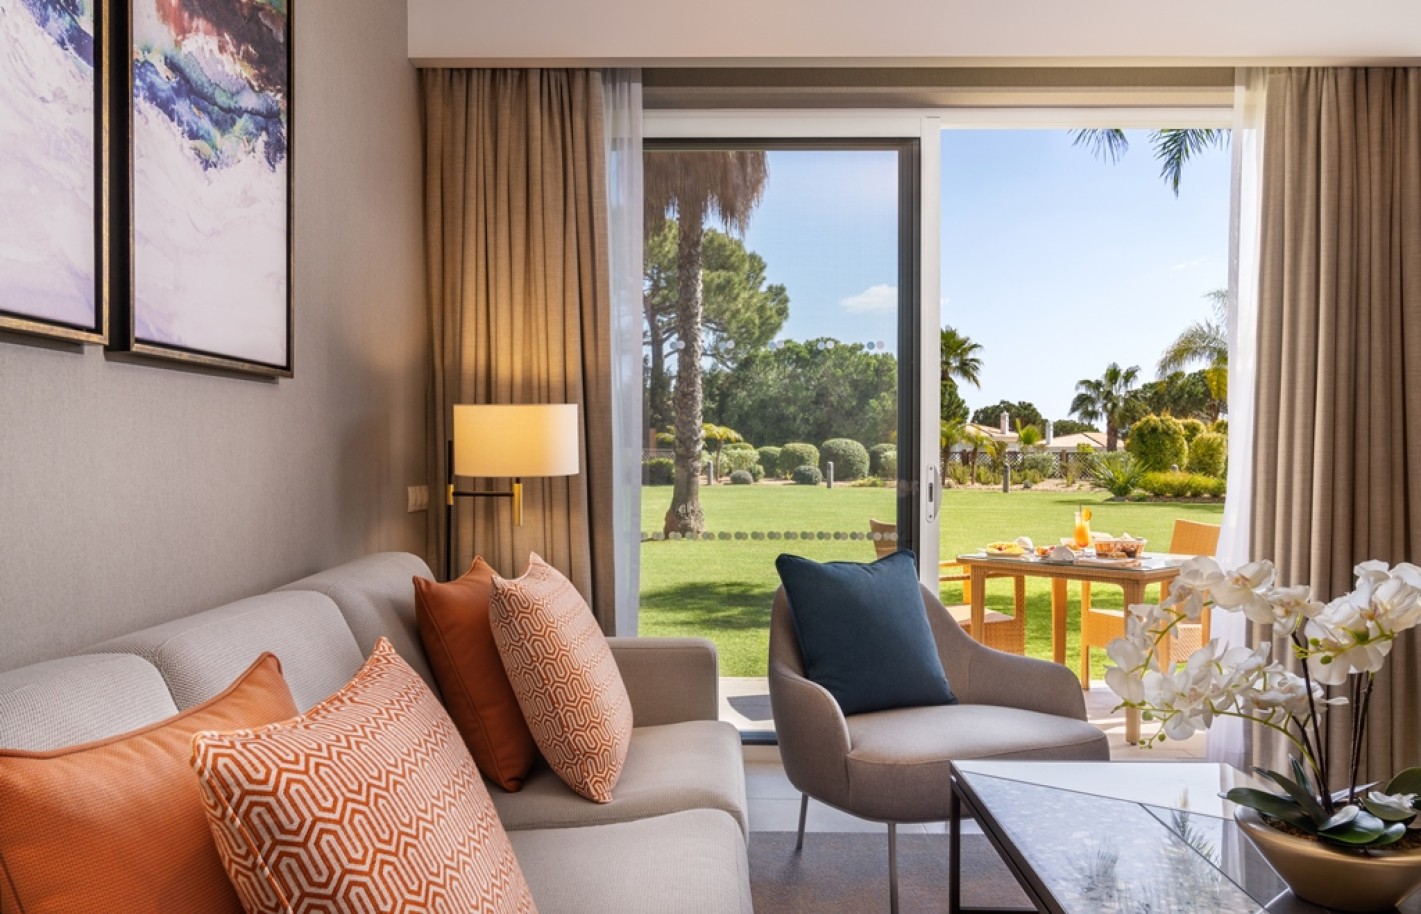 Apartamento, 2 quartos, piscina, para venda na Quinta do Lago, Algarve_263344